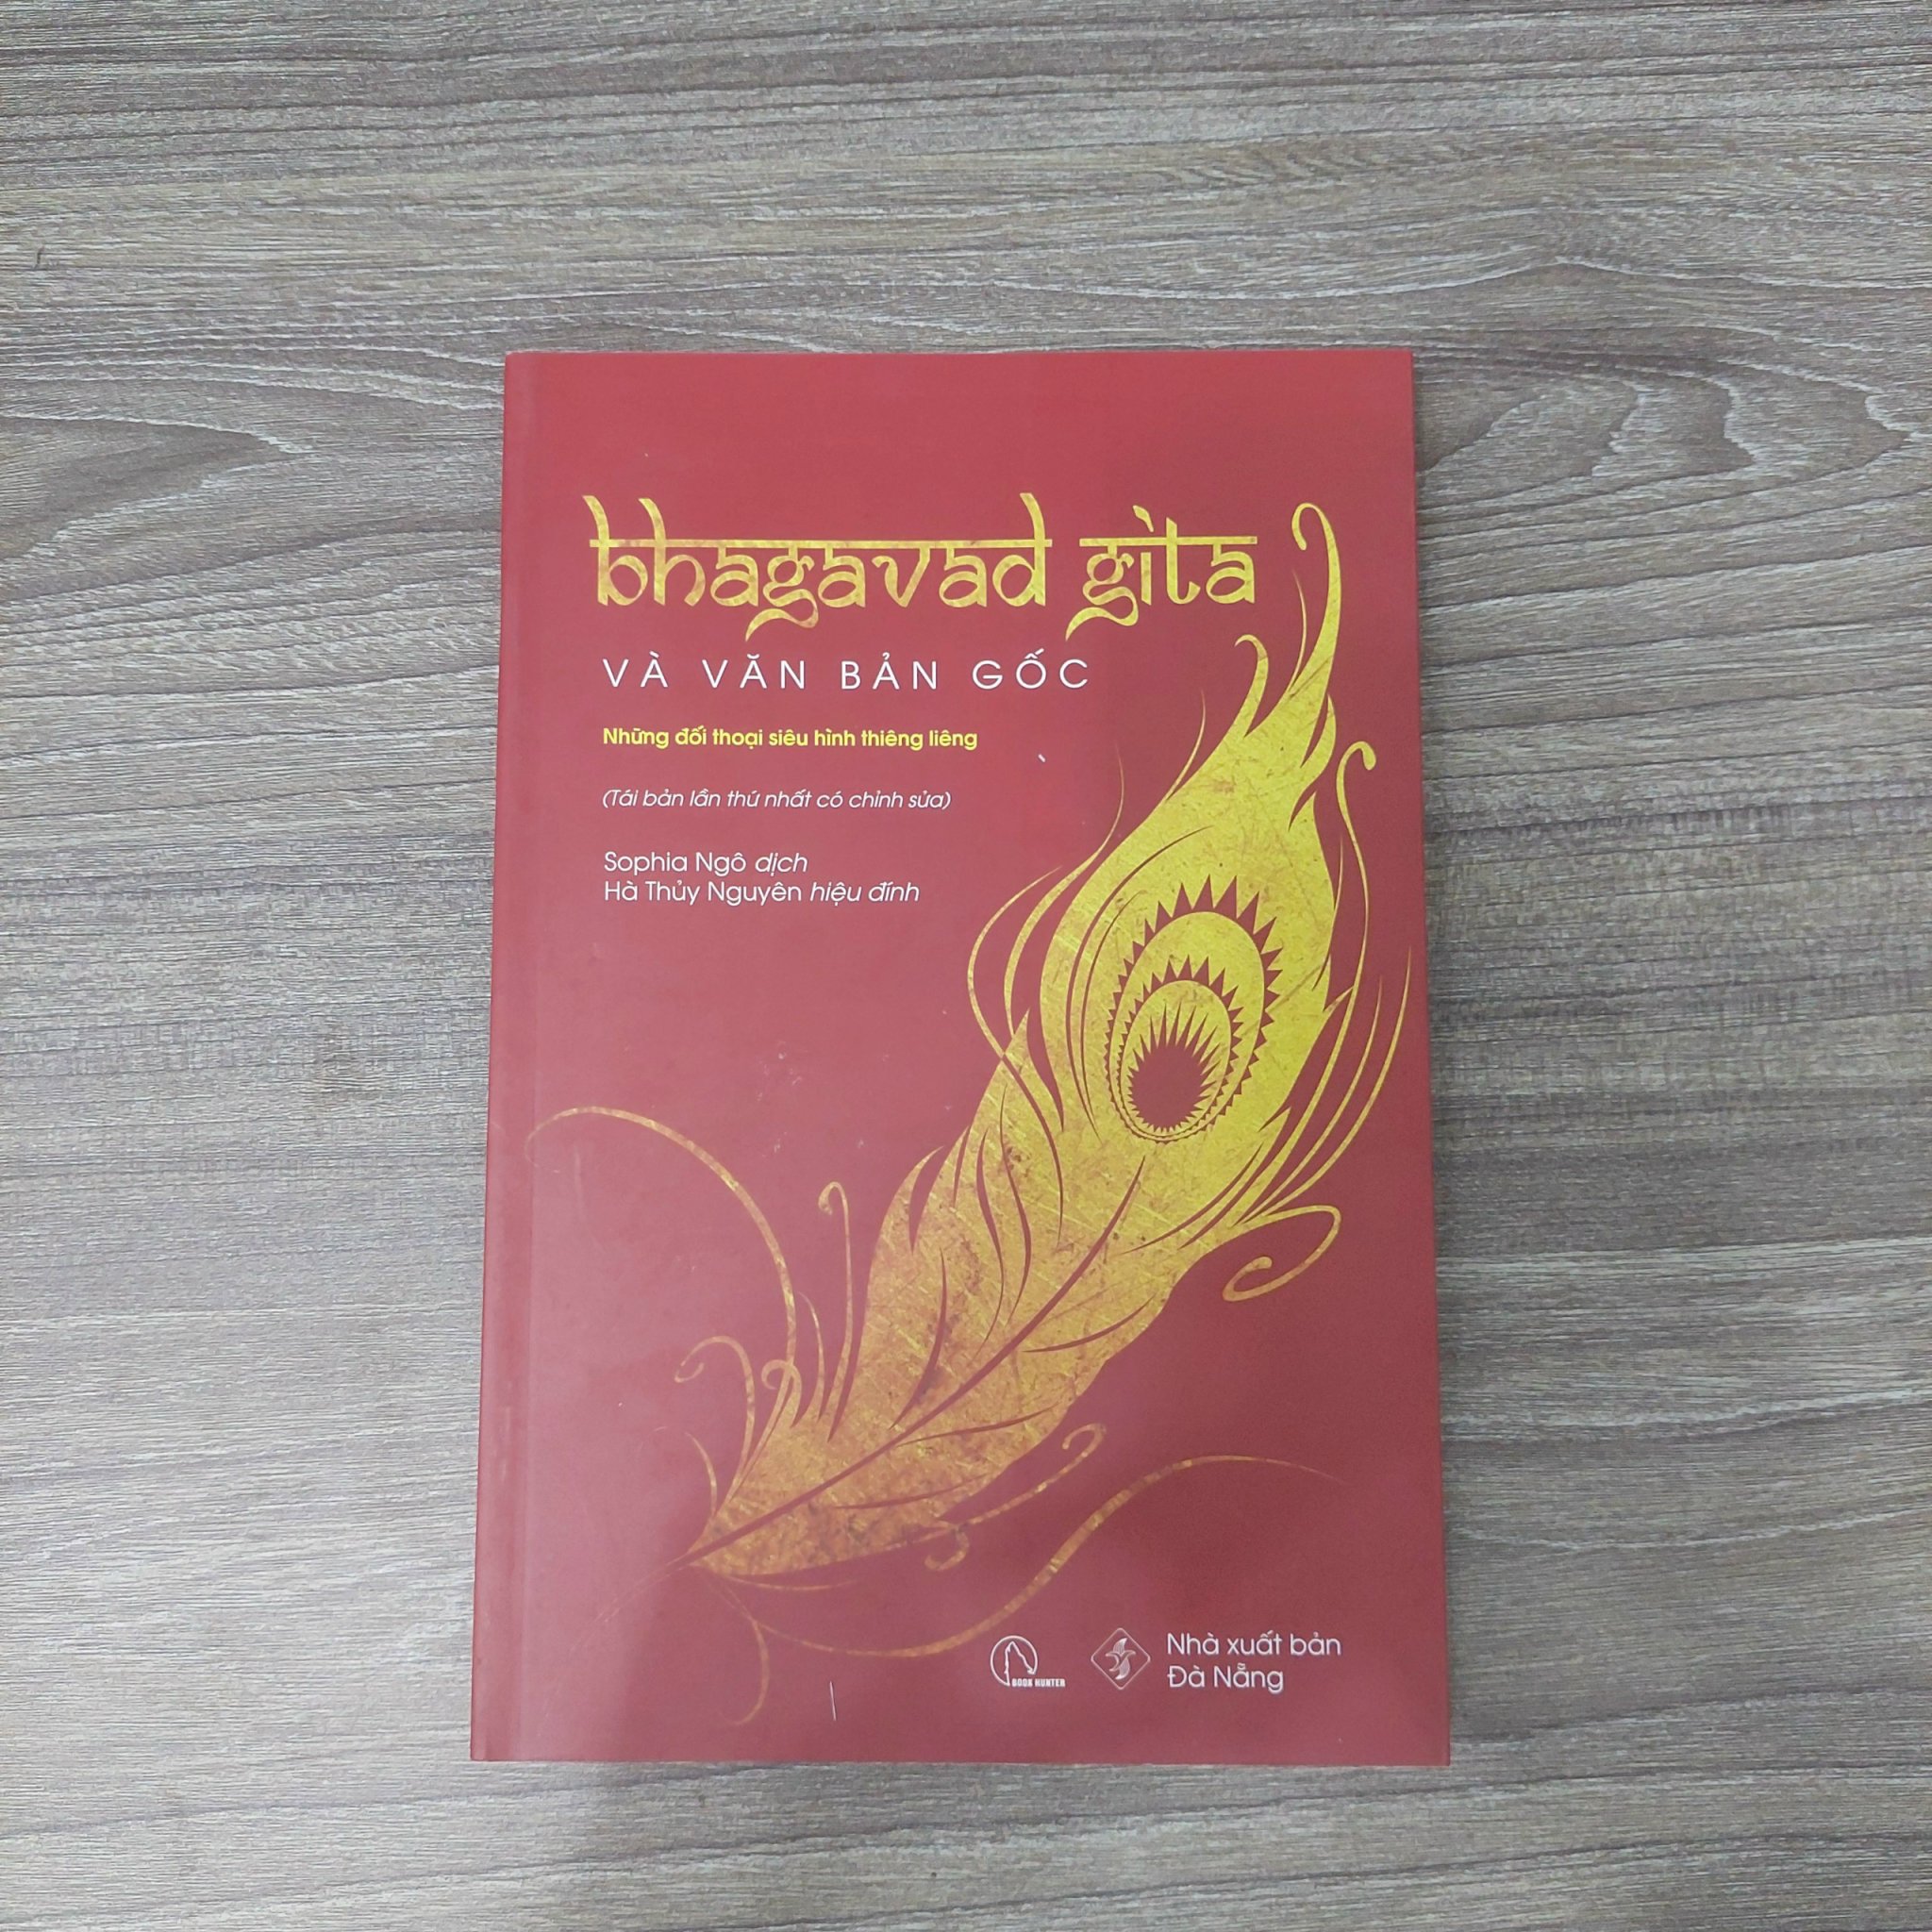 (Tái bản) Bhagavad Gita Và Văn Bản Gốc - Những đối thoại siêu hình thiêng liêng - Sophia Ngô dịch, Hà Thủy Nguyên dịch - (bìa mềm)